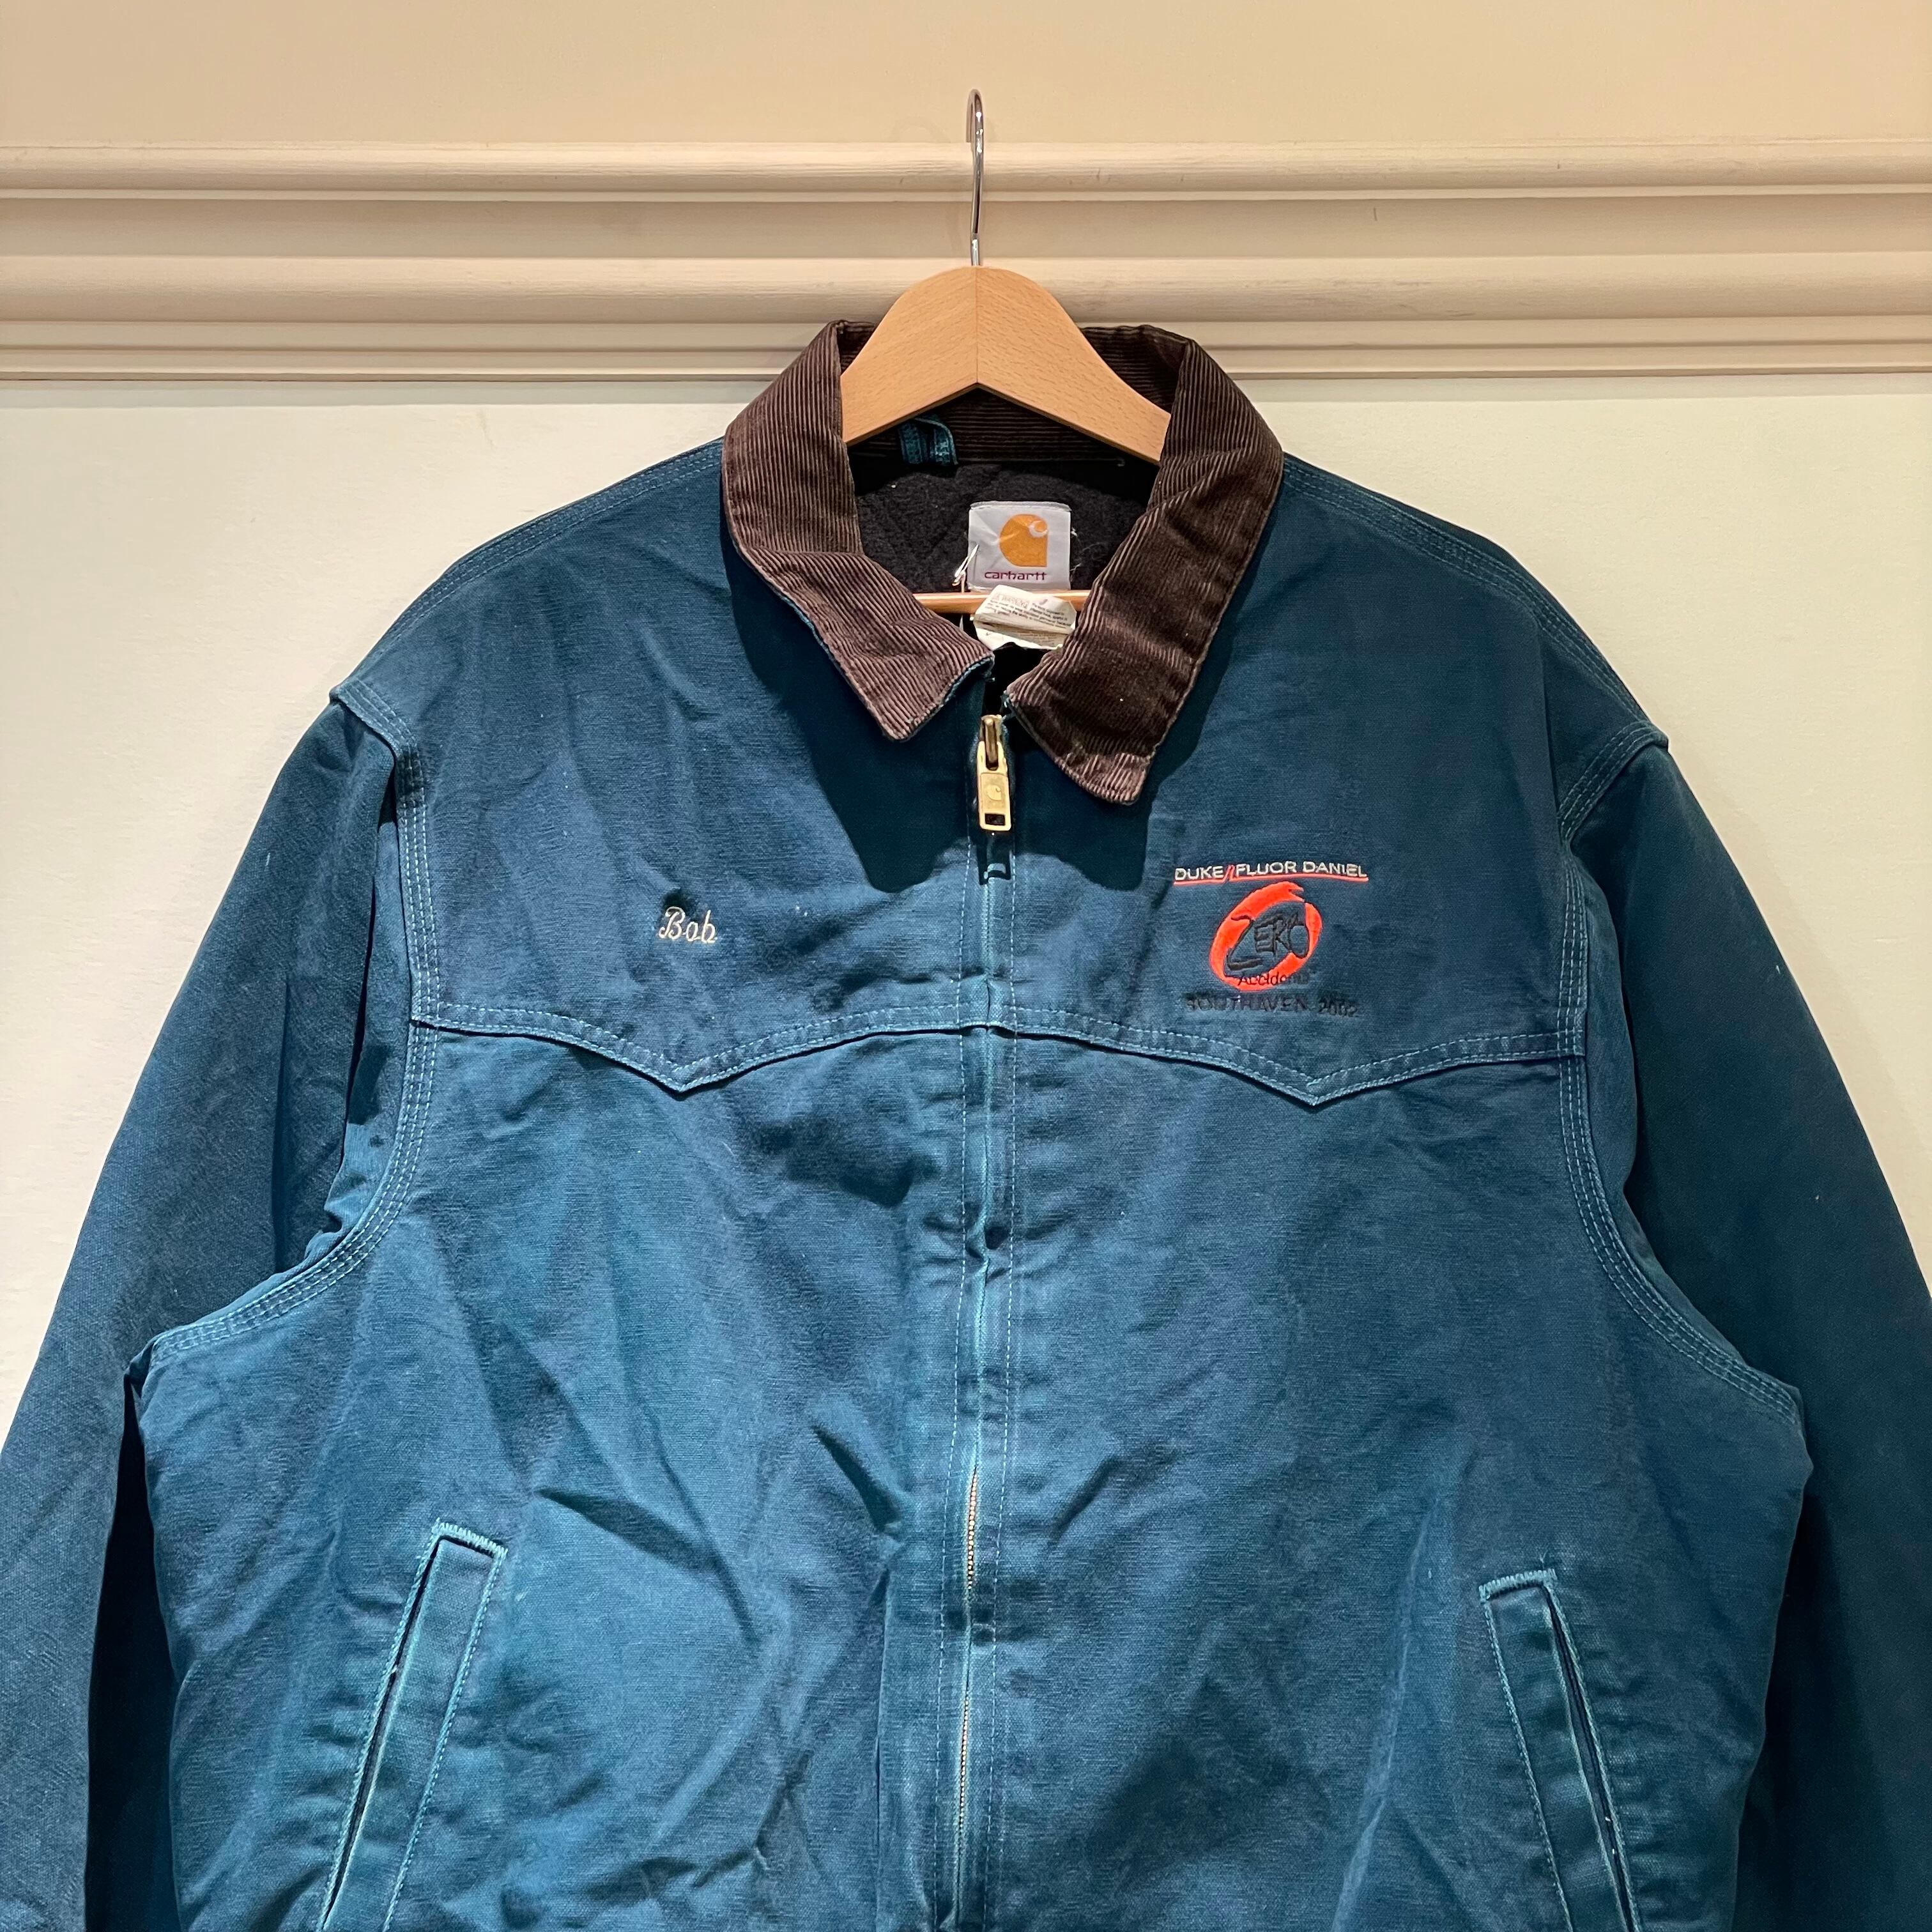 carhartt used jacket